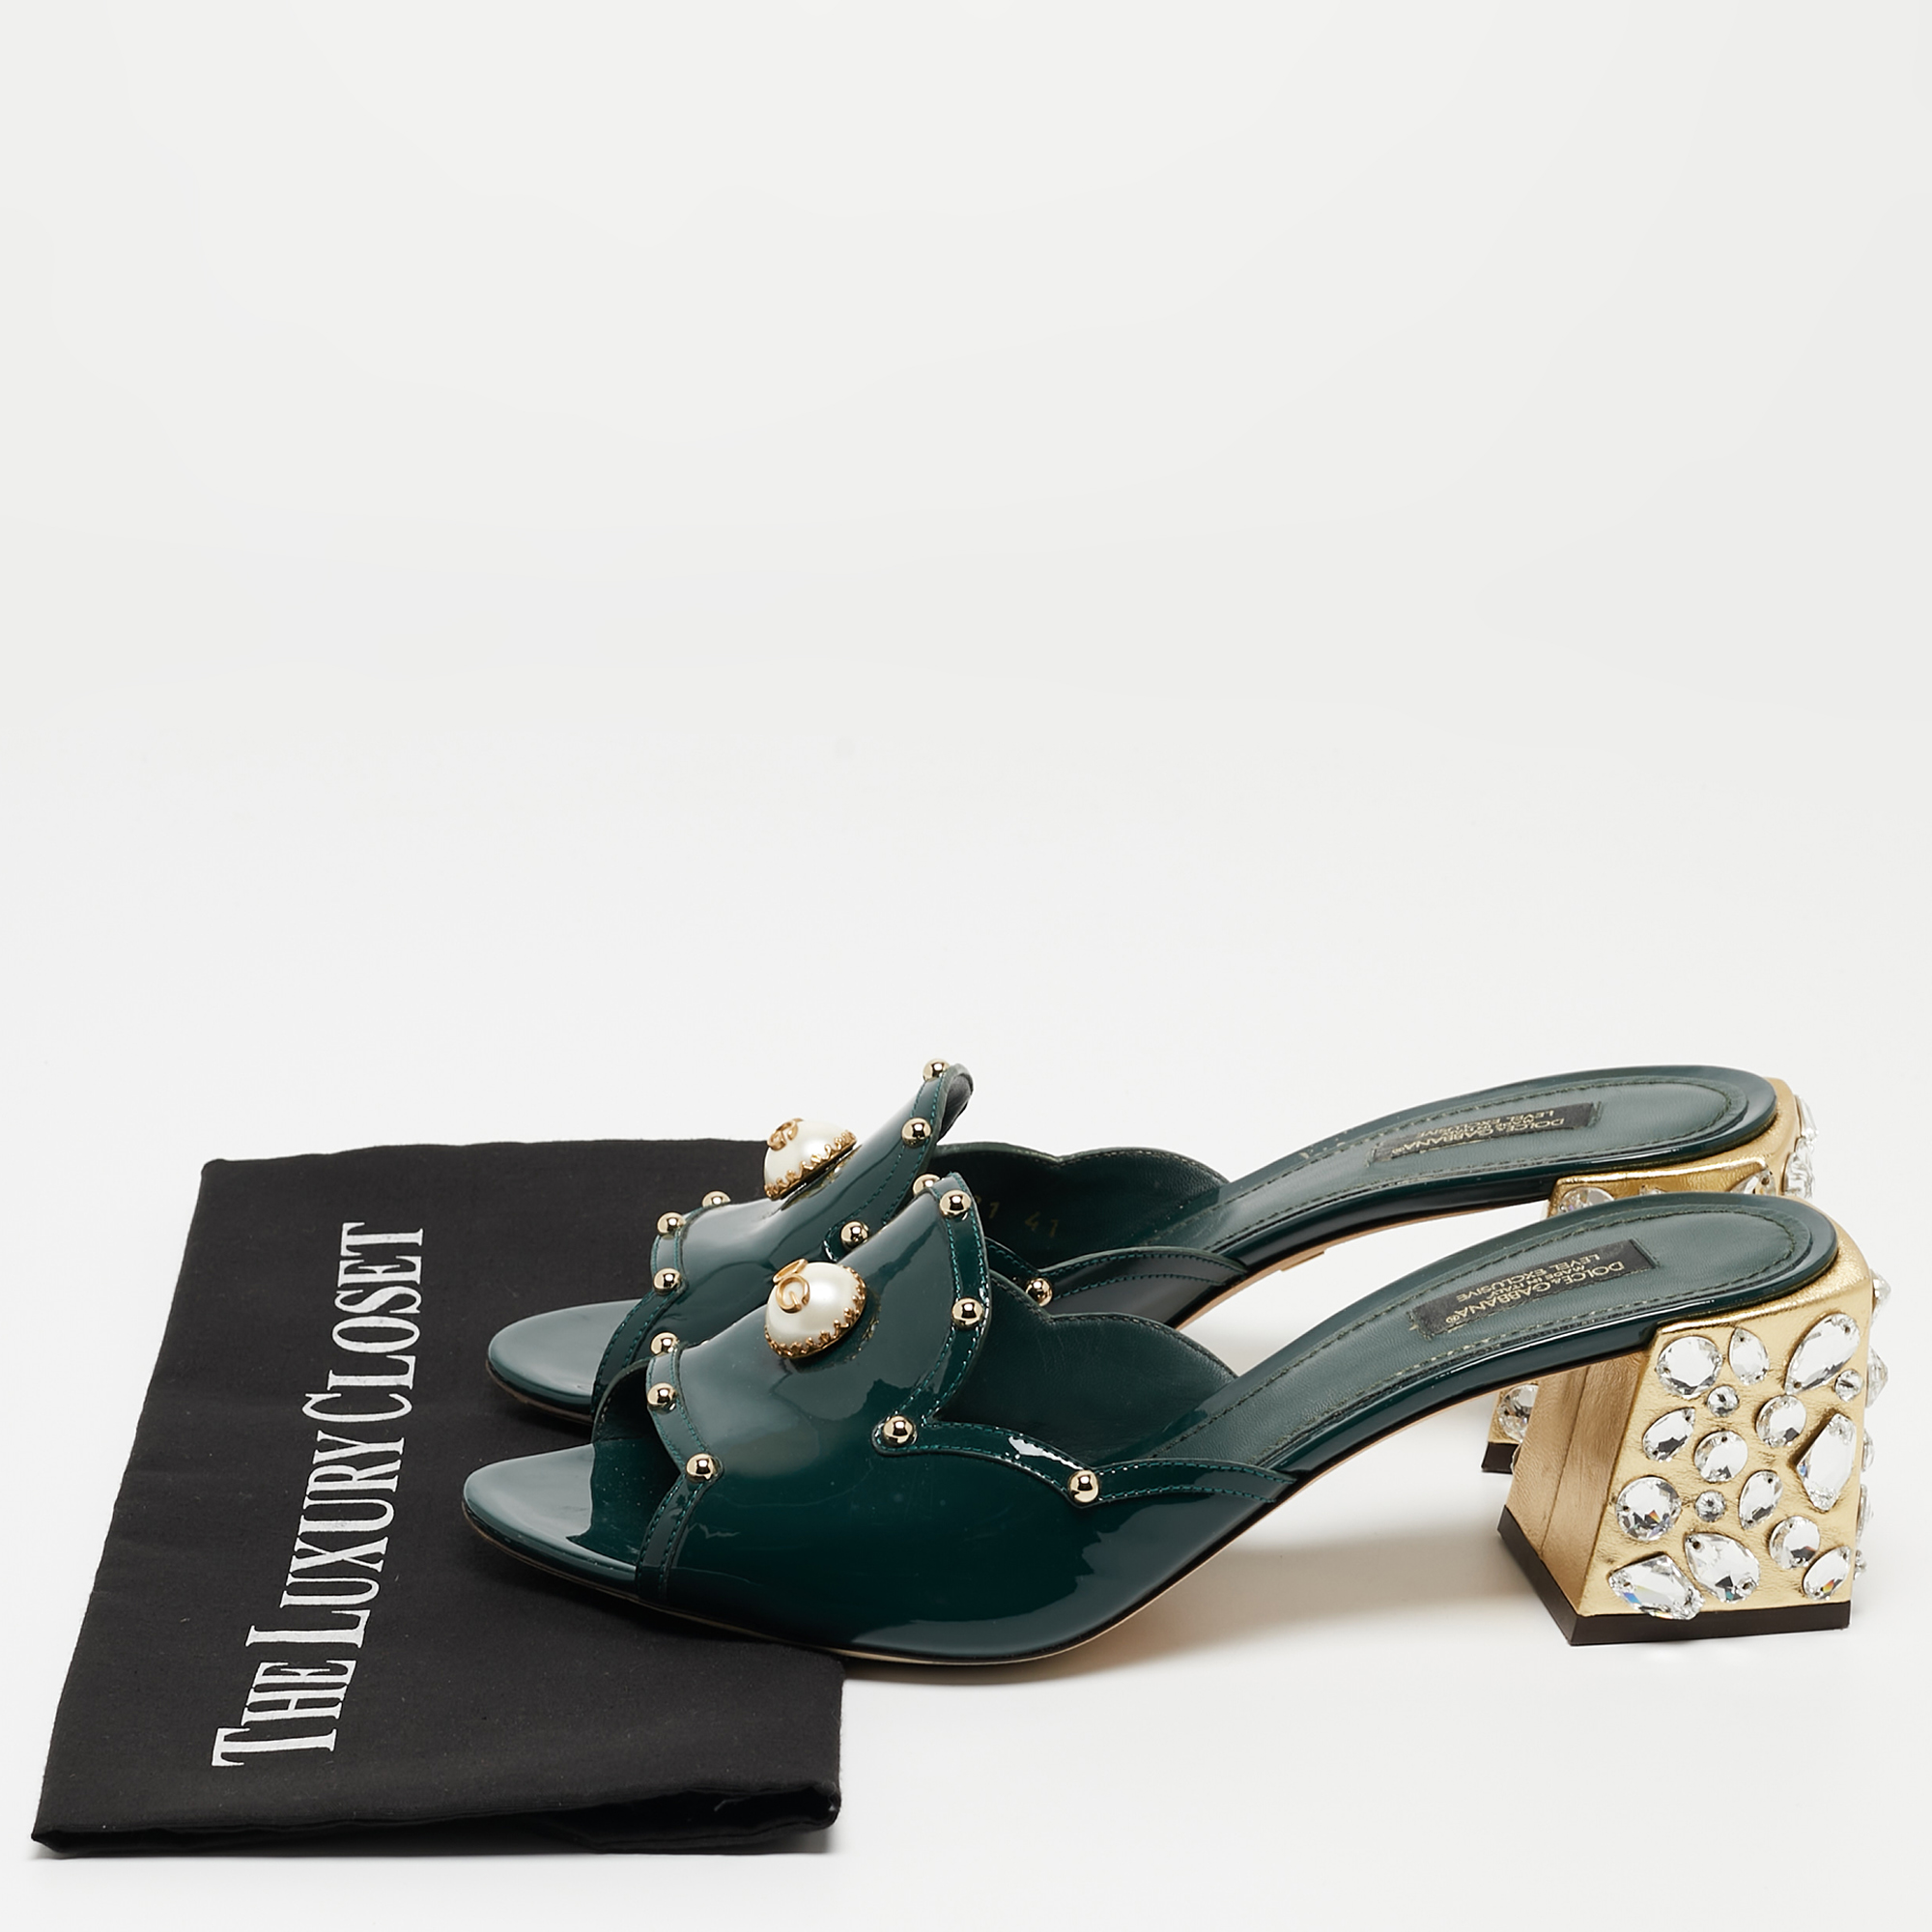 Dolce & Gabbana Dark Green Patent Leather Crystal Embellished Slide Sandals Size 41